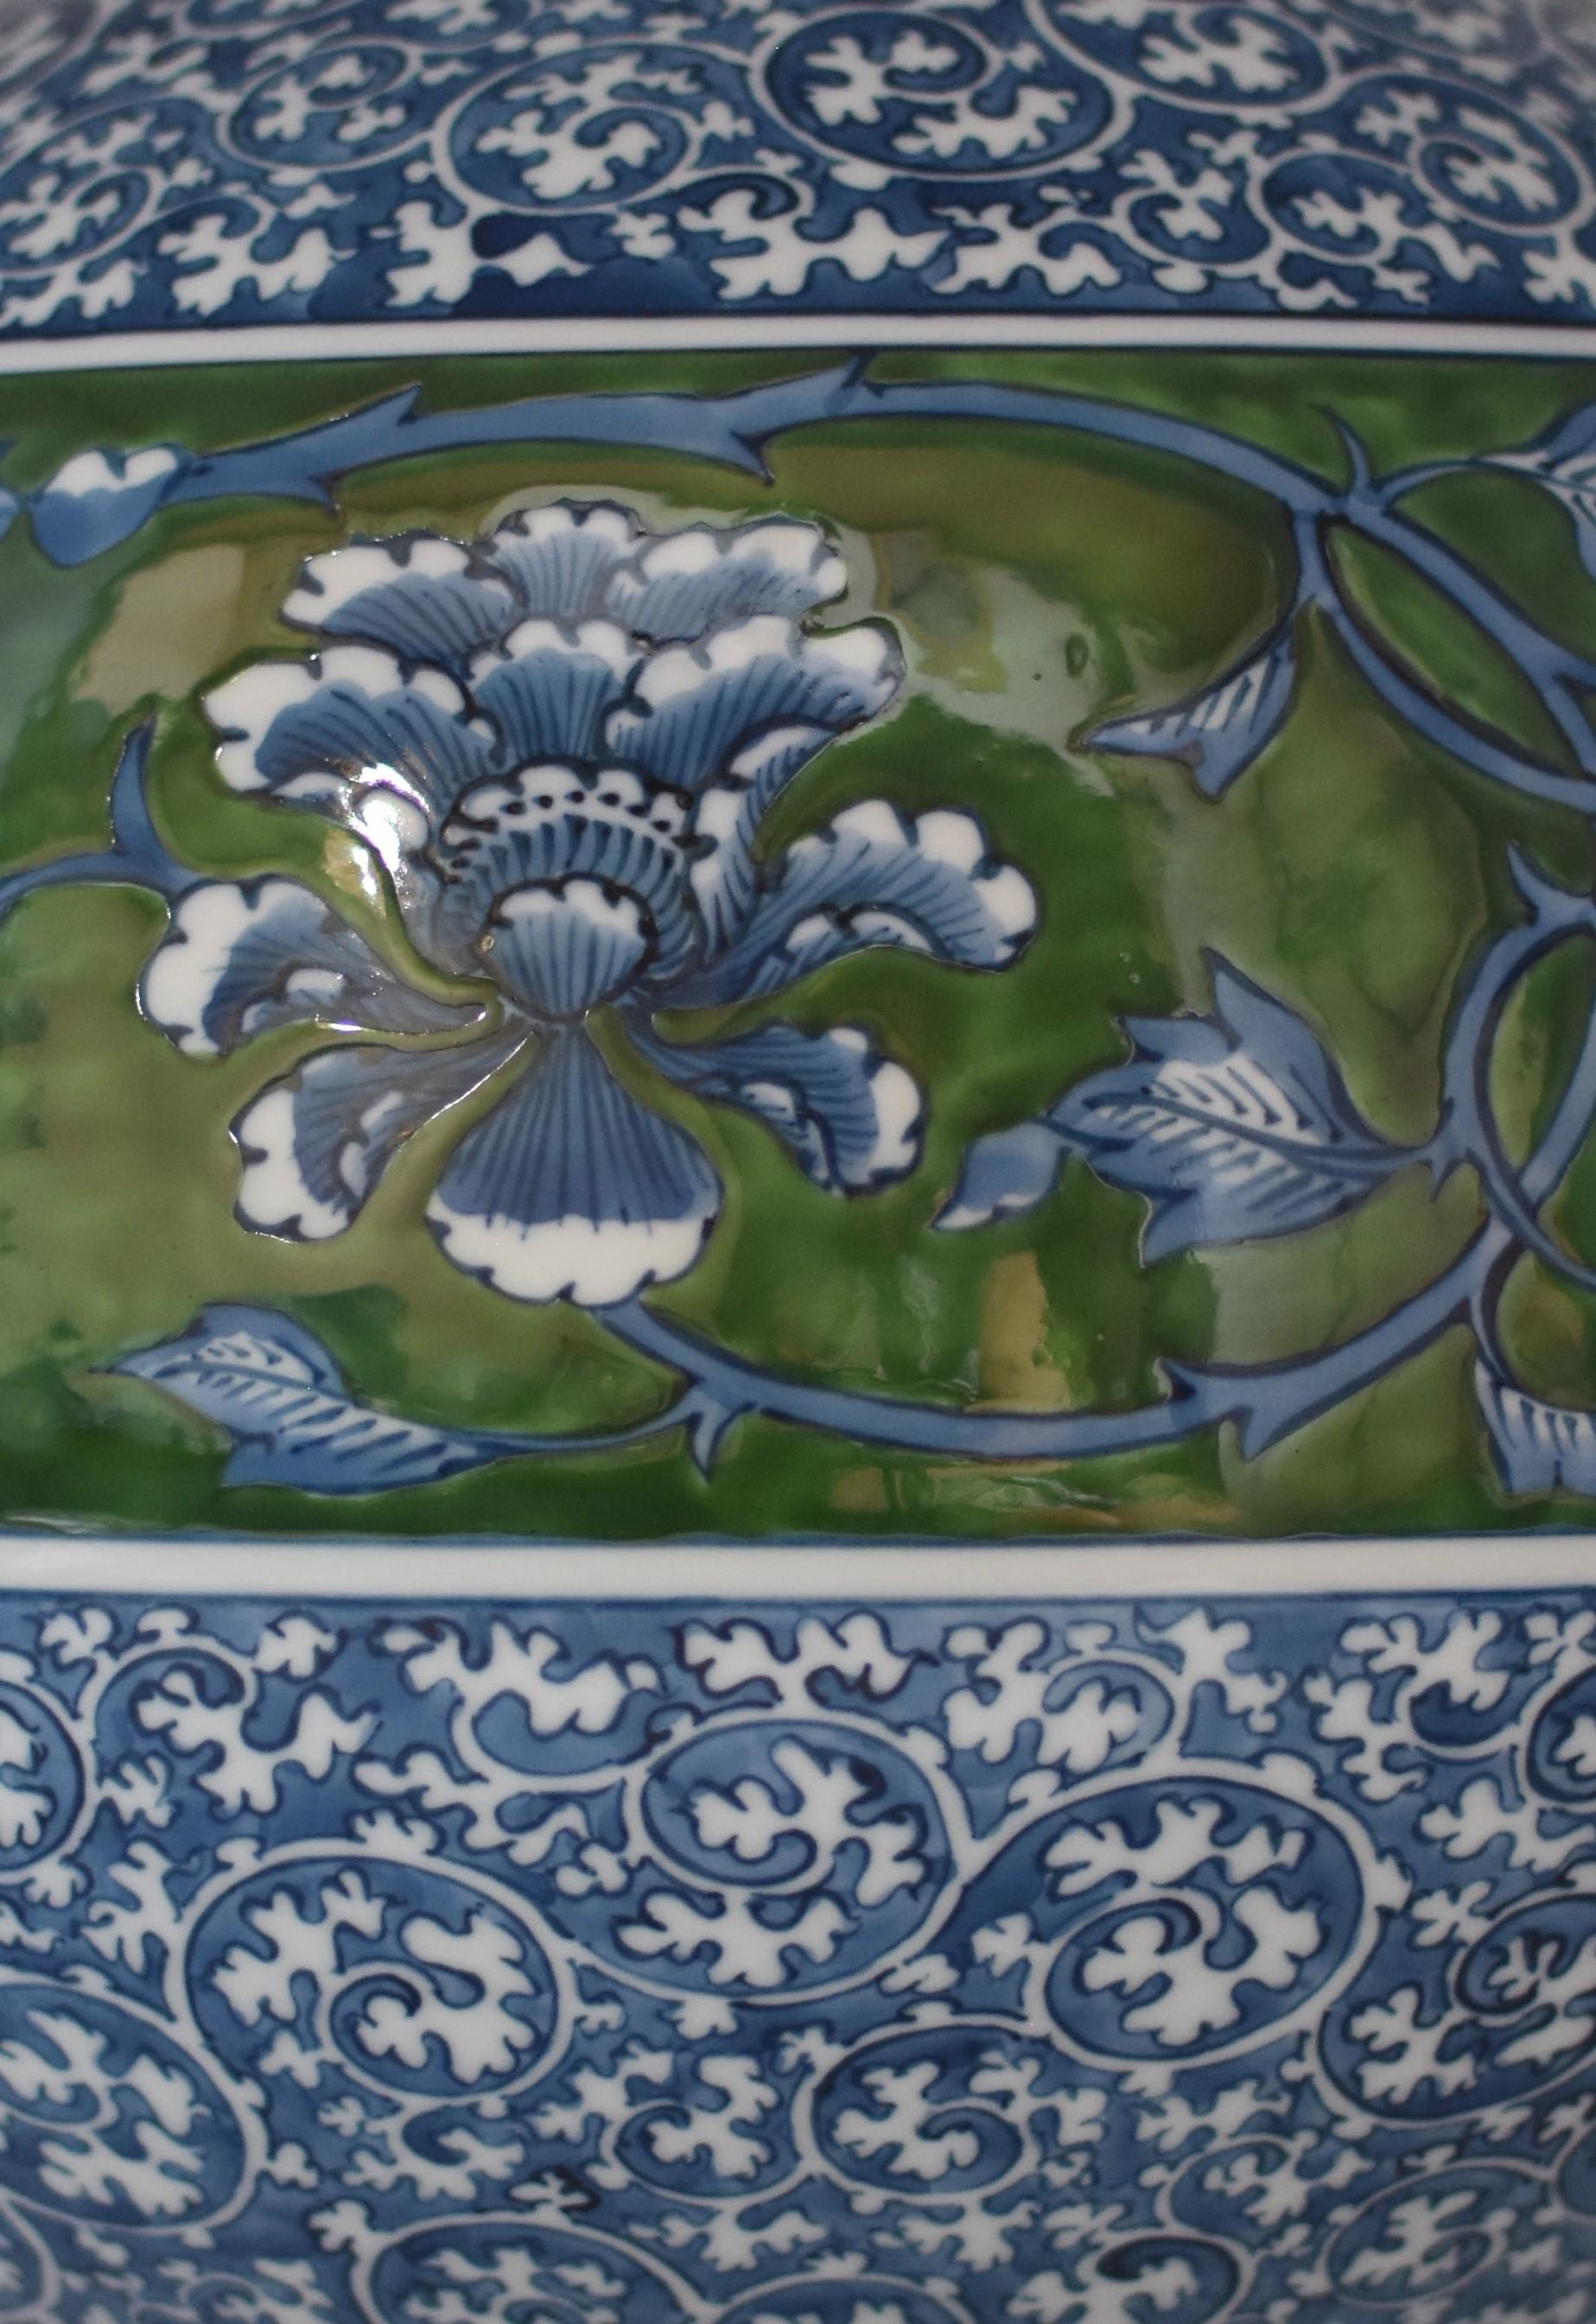 Japanische große blau-grüne Porzellanvase von zeitgenössischem Meisterkünstler (21. Jahrhundert und zeitgenössisch)